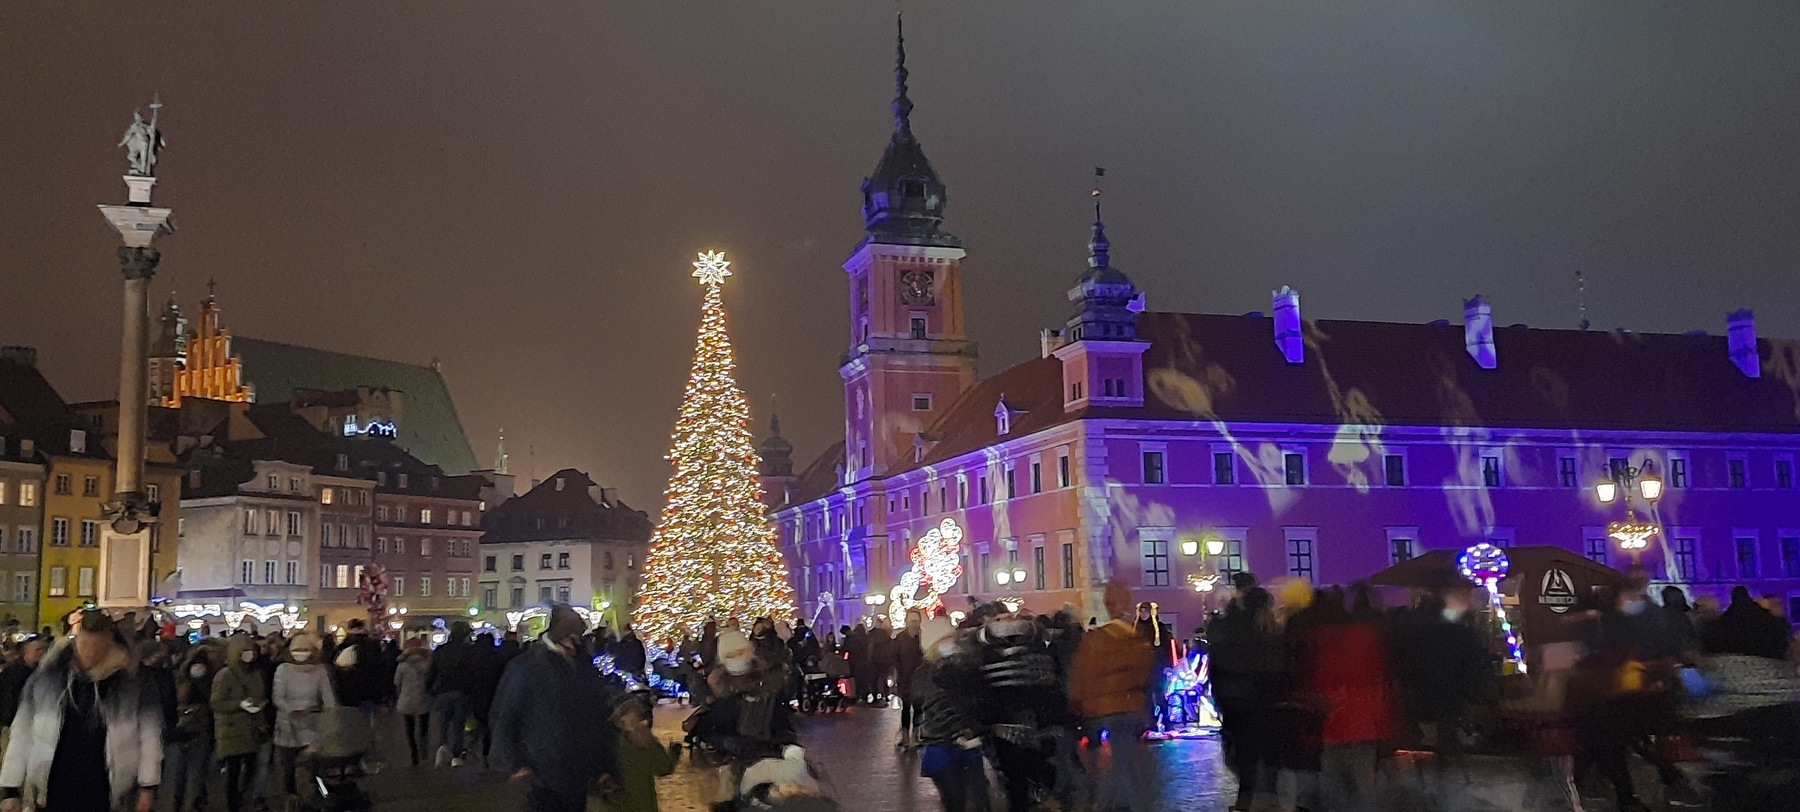 Замковая площадь в Варшаве Варшава Польша